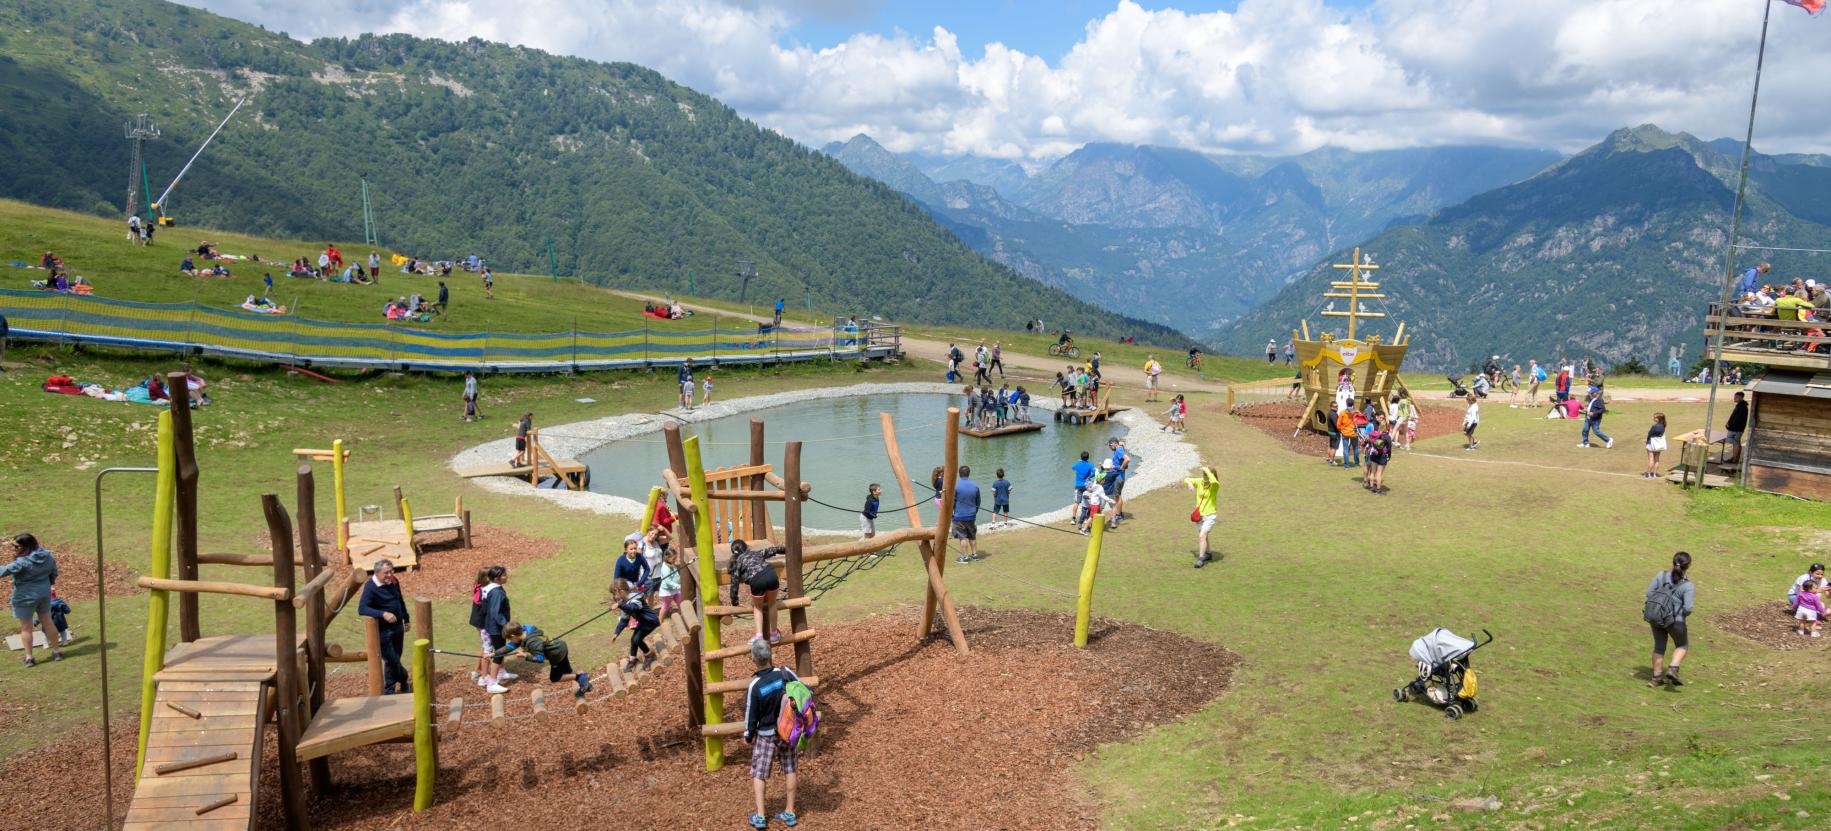 The Covo of Meraviglio playground, Alpe di Mera